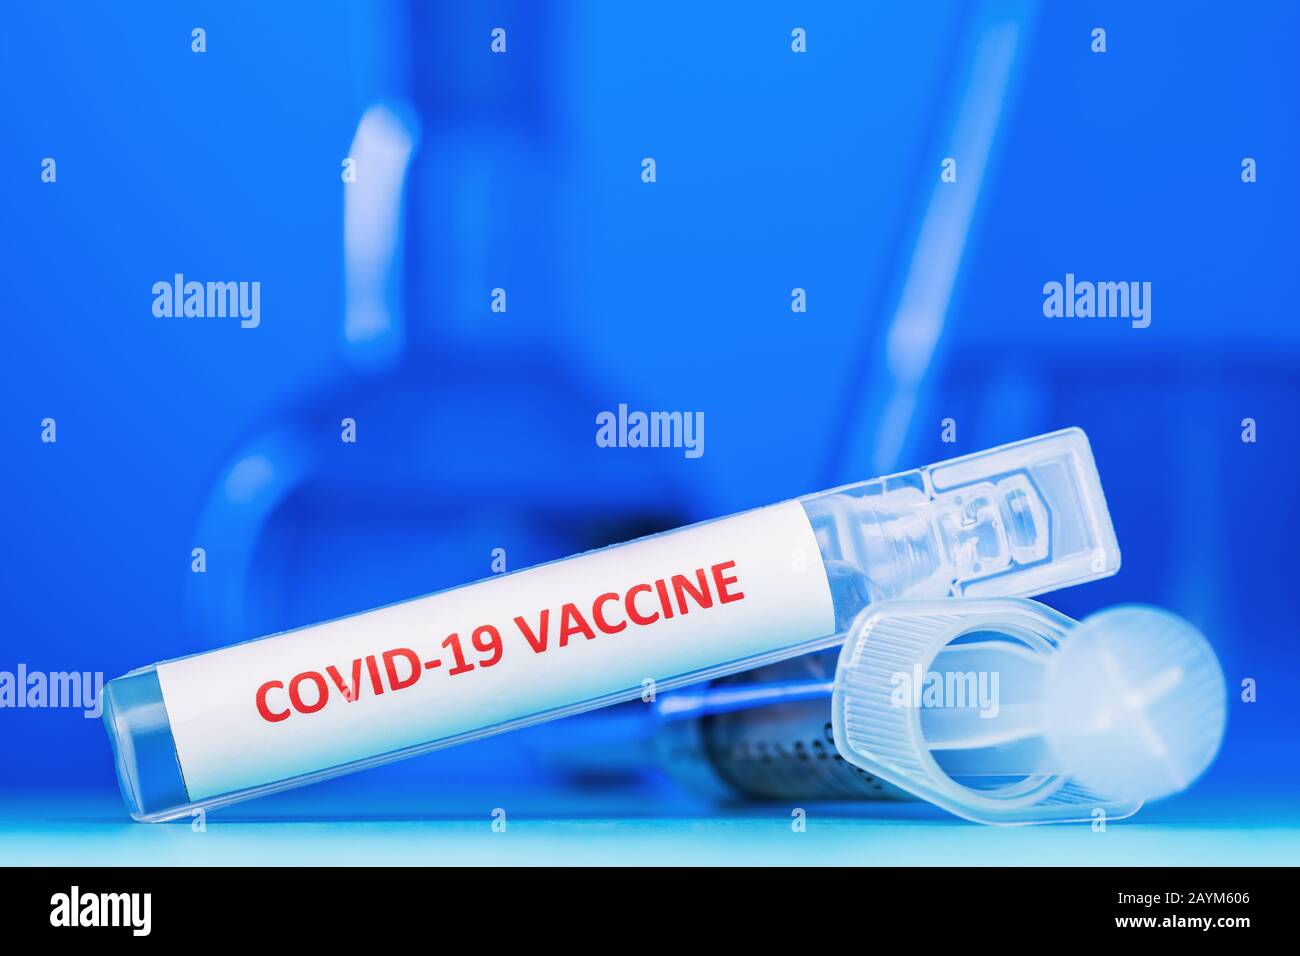 Ampolla con vacuna contra coronavirus COVID-19 sobre fondo azul, primer plano. El concepto de la victoria sobre el virus Foto de stock